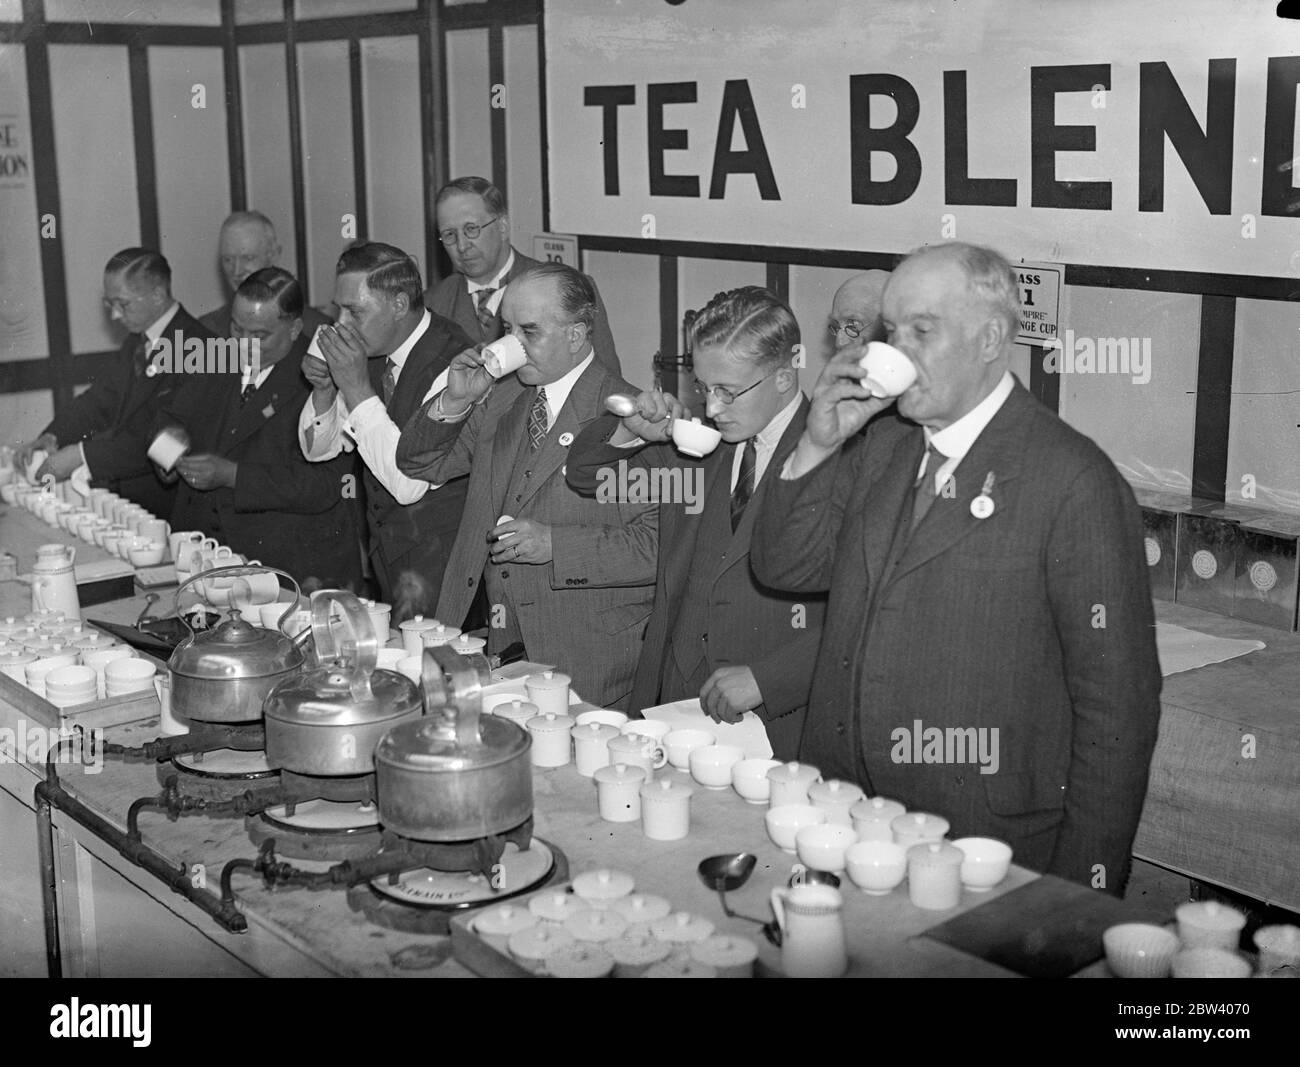 Concours de mélange de thé à l'exposition des épiciers . Le mélange de thé s'ouvre aux maîtres , aux gestionnaires et à l'assistance pour la coupe du défi ' le Grocer ' est en cours à l'exposition des Grocers , Royal Agricultural Hall , Islington . Photos , le concours de mélange de thé en cours . 21 septembre 1936 Banque D'Images